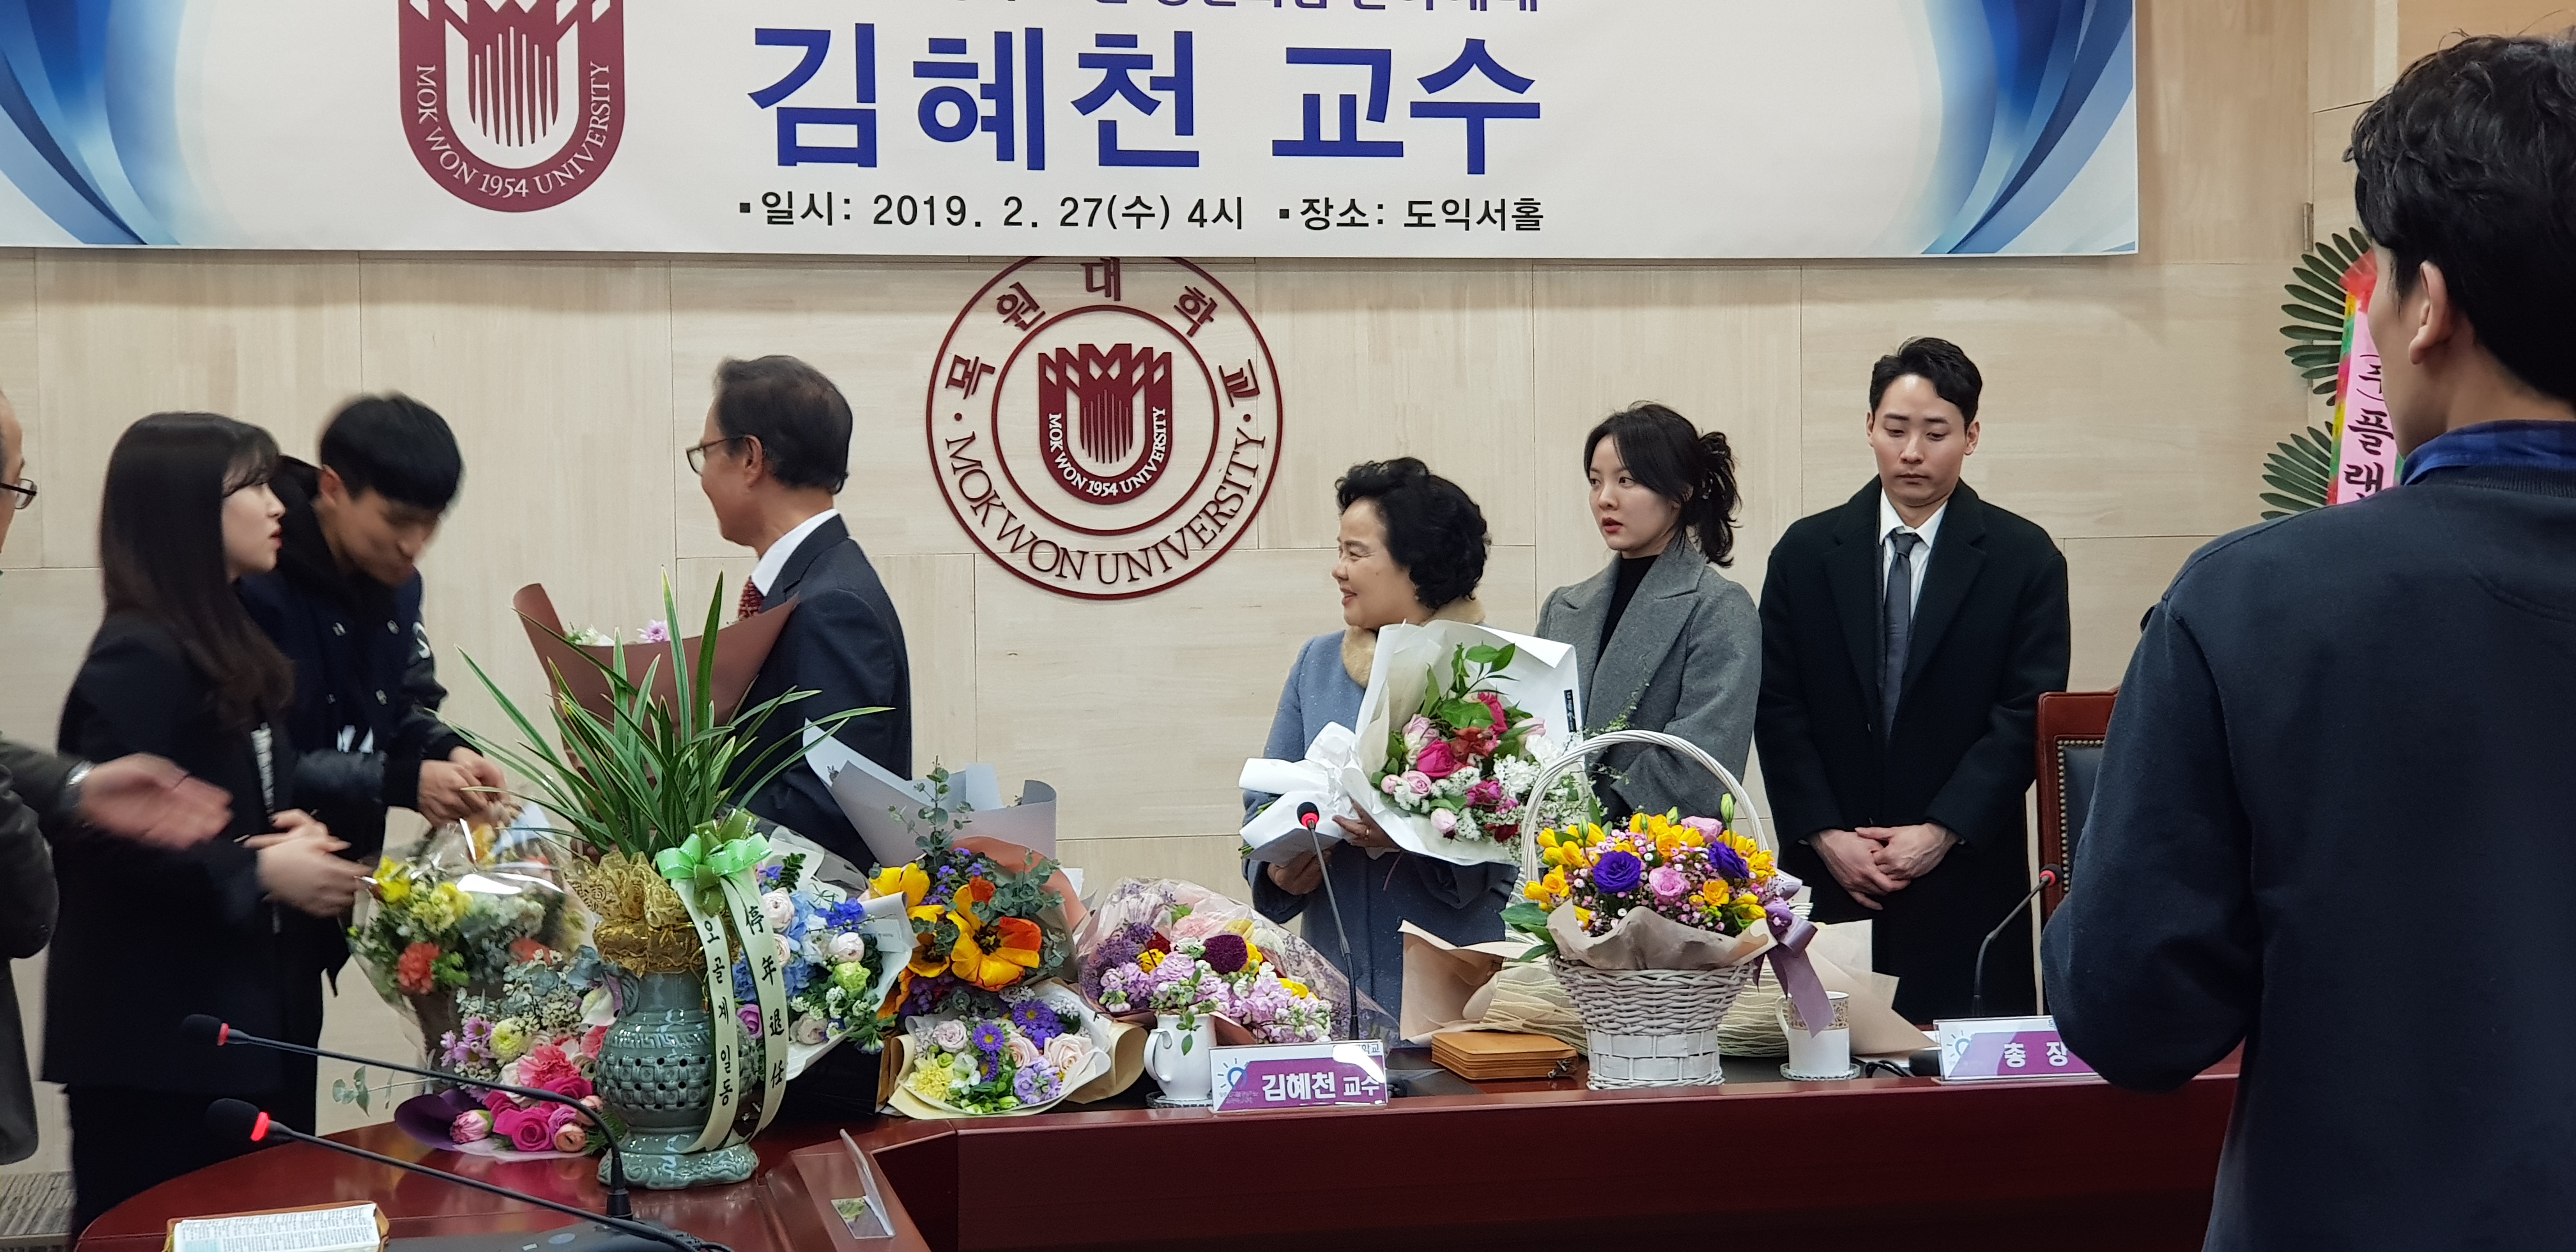 김혜천 교수님 은퇴식 게시글의 4 번째 이미지